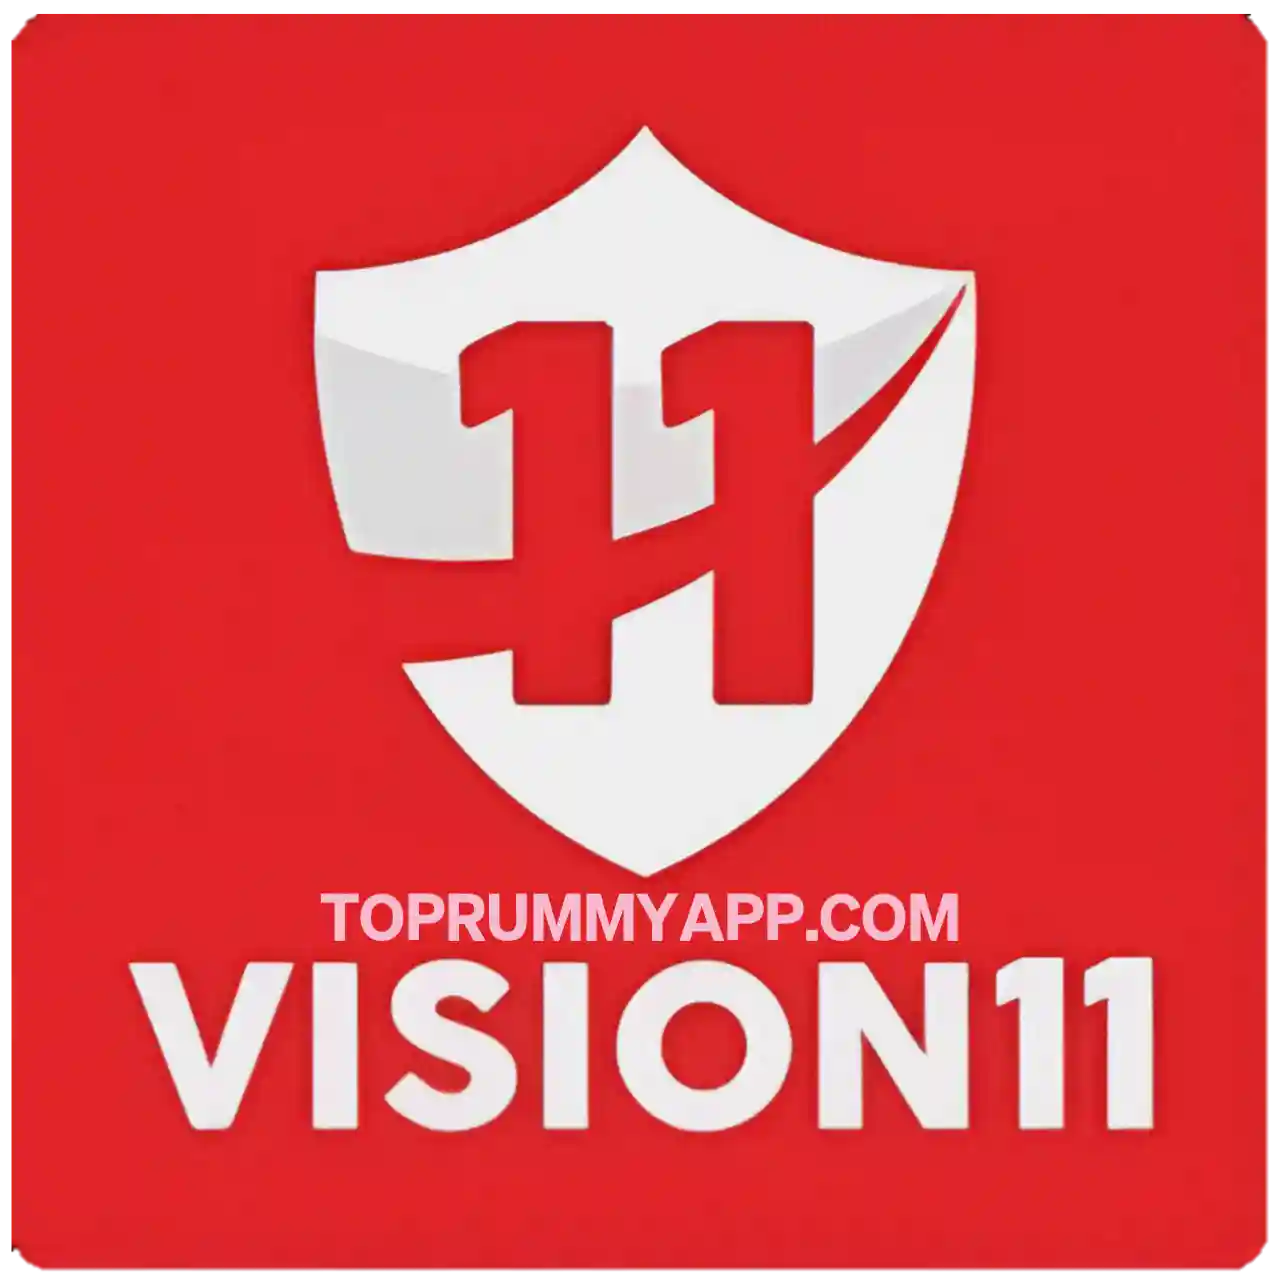 Vision 11 App Download -  All Cricket Fantasy App List